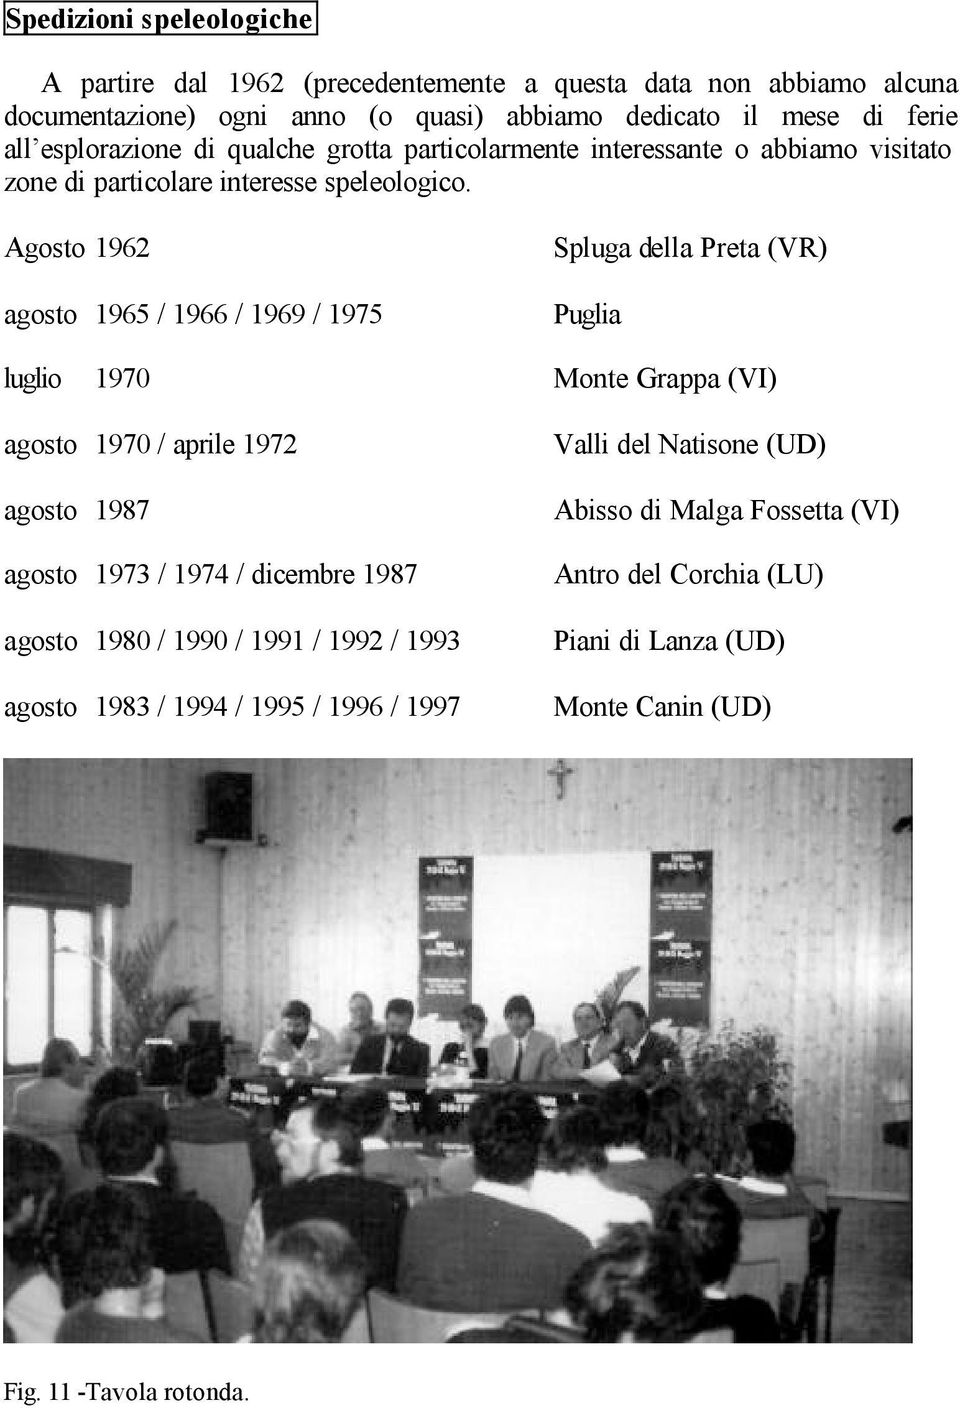 Agosto 1962 agosto 1965 / 1966 / 1969 / 1975 Spluga della Preta (VR) Puglia luglio 1970 Monte Grappa (VI) agosto 1970 / aprile 1972 agosto 1987 agosto 1973 / 1974 /